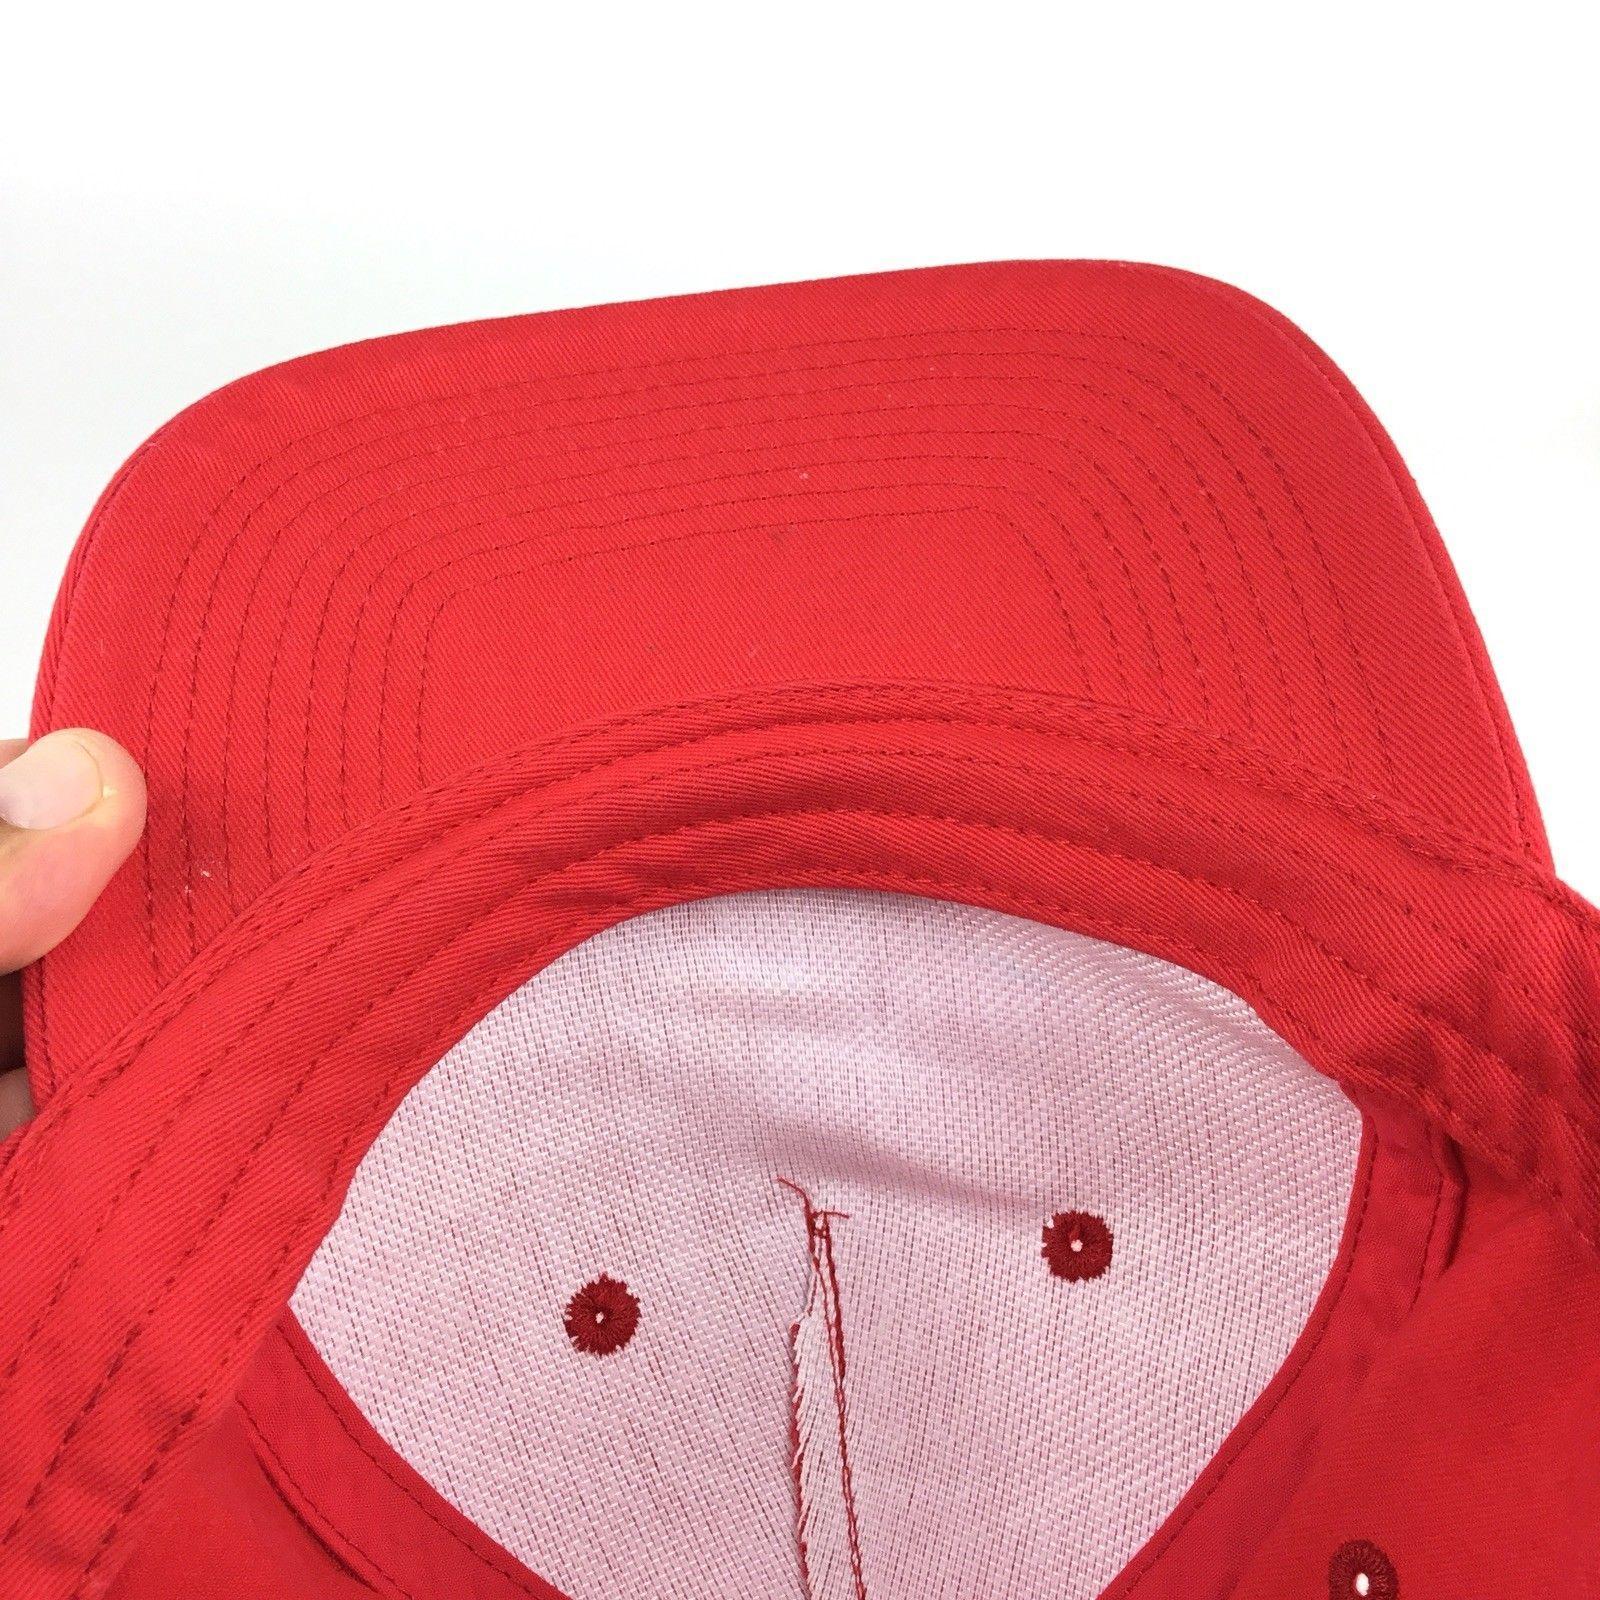 Red Bullseye Logo - TARGET Store Bullseye Logo Red Baseball Size Cap Hat Adj Men's Size